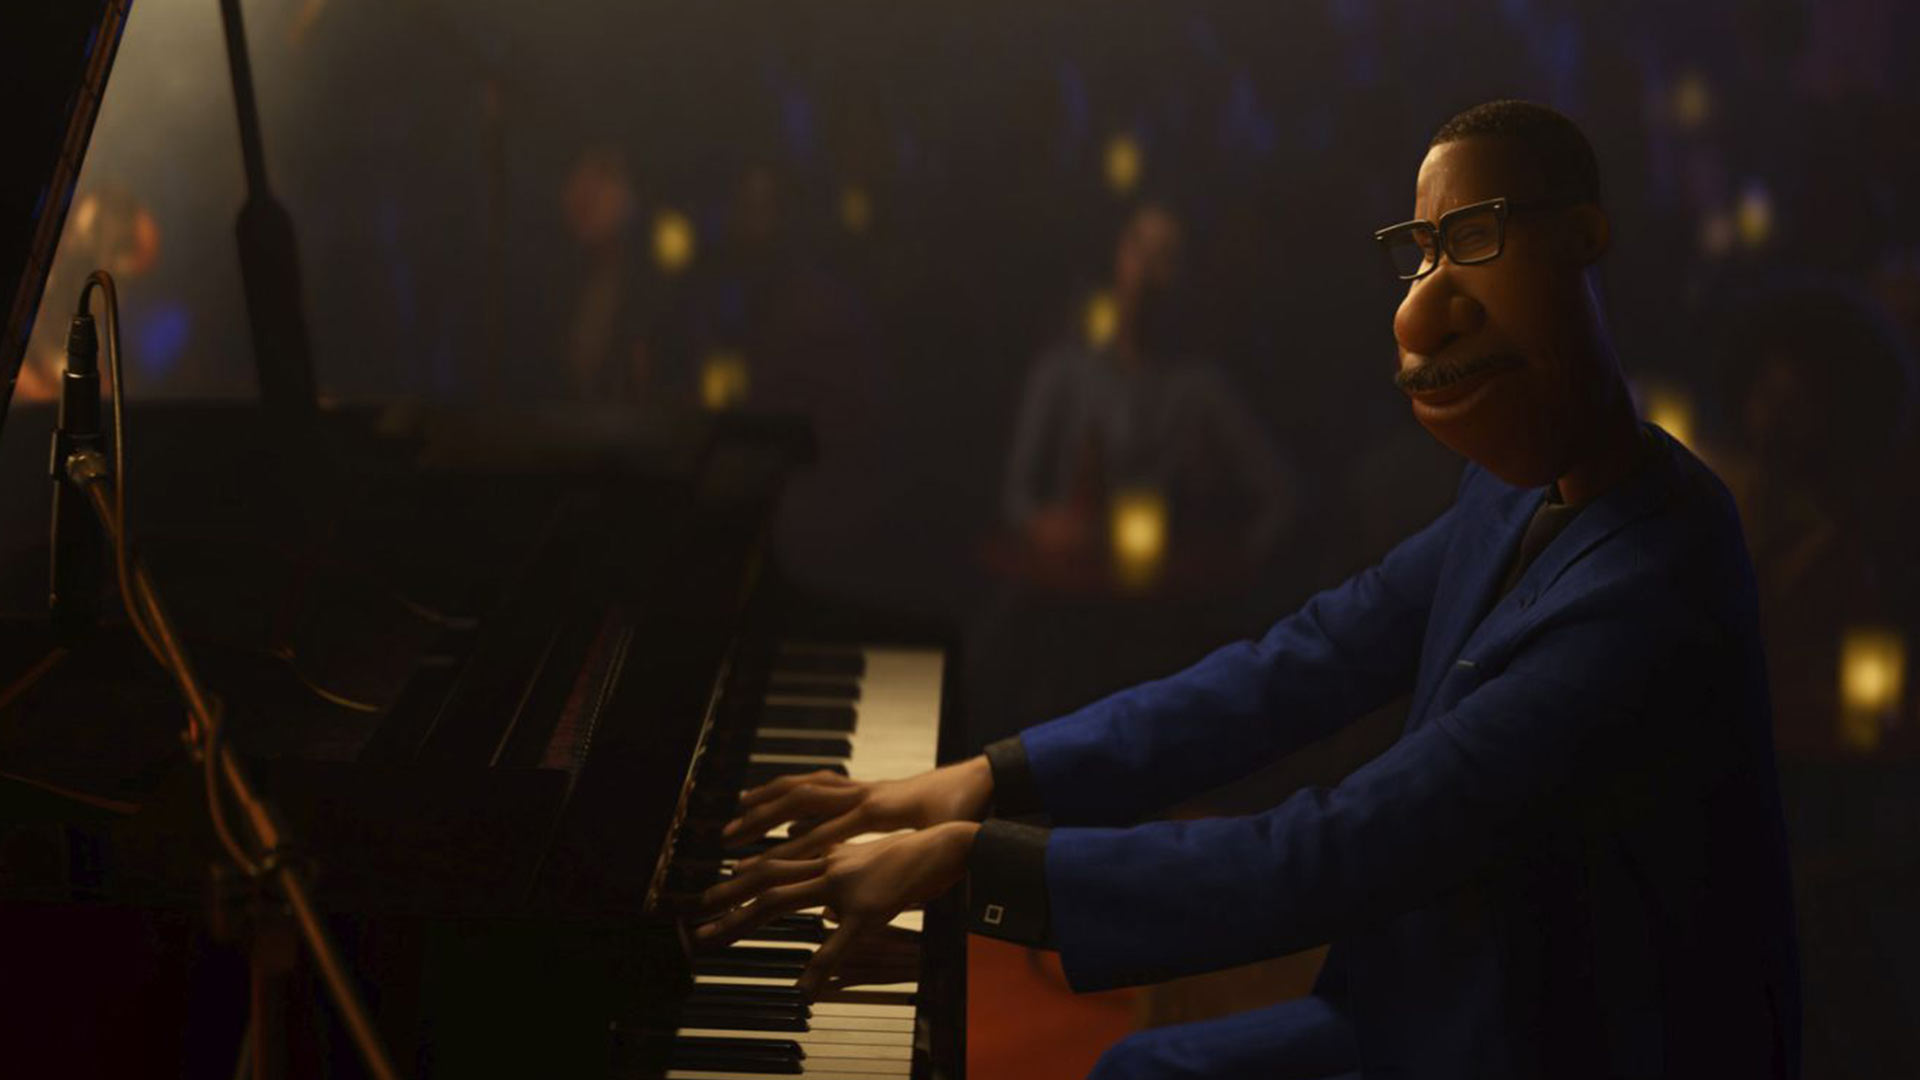 جو در حال نواختن پیانو در انیمیشن روح